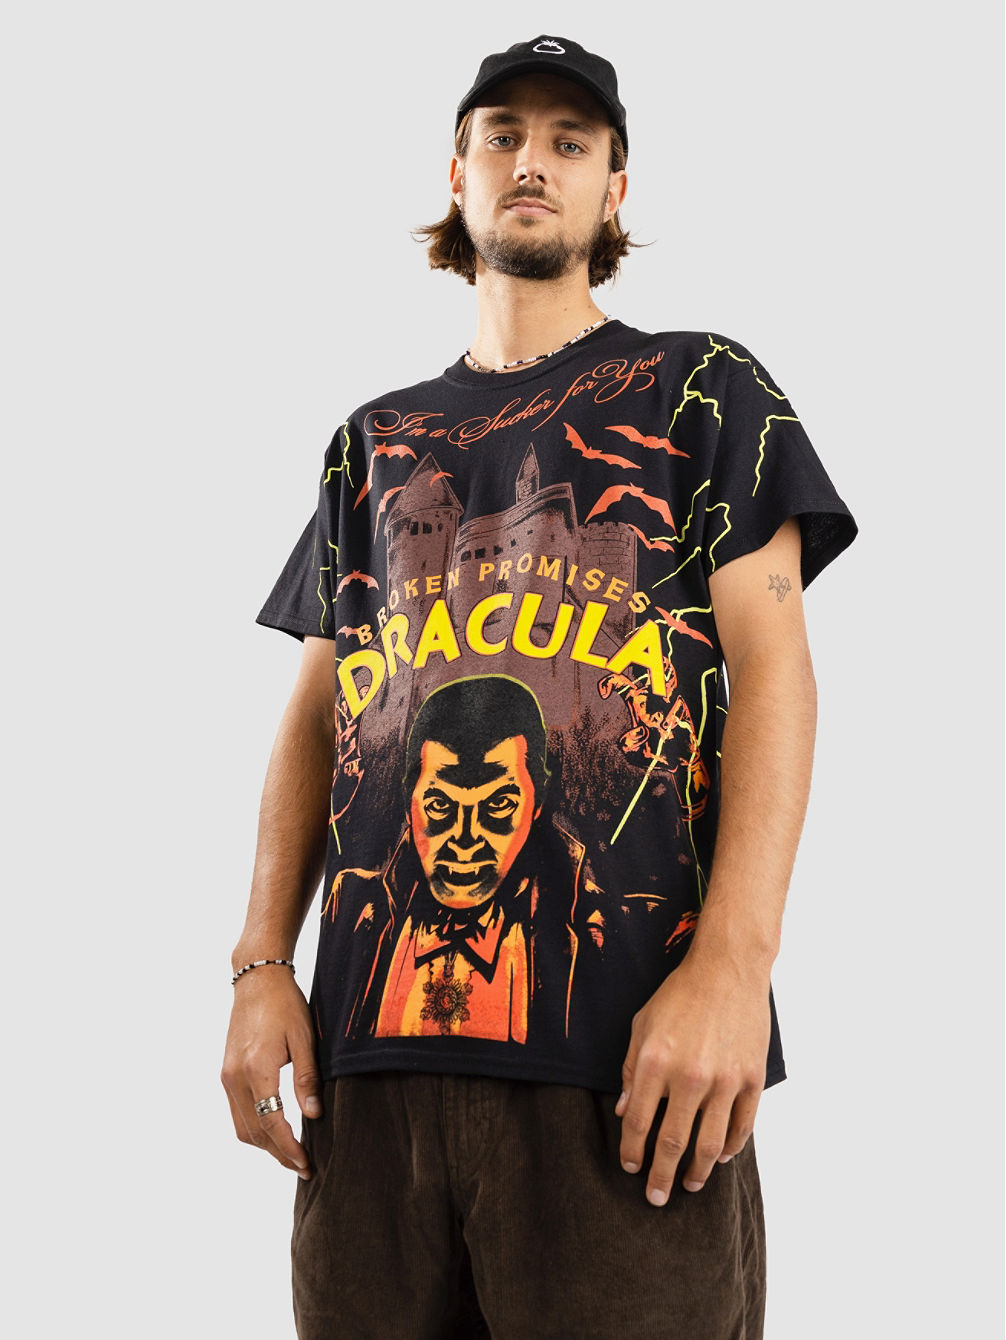 Dracula Sucker For You T-shirt